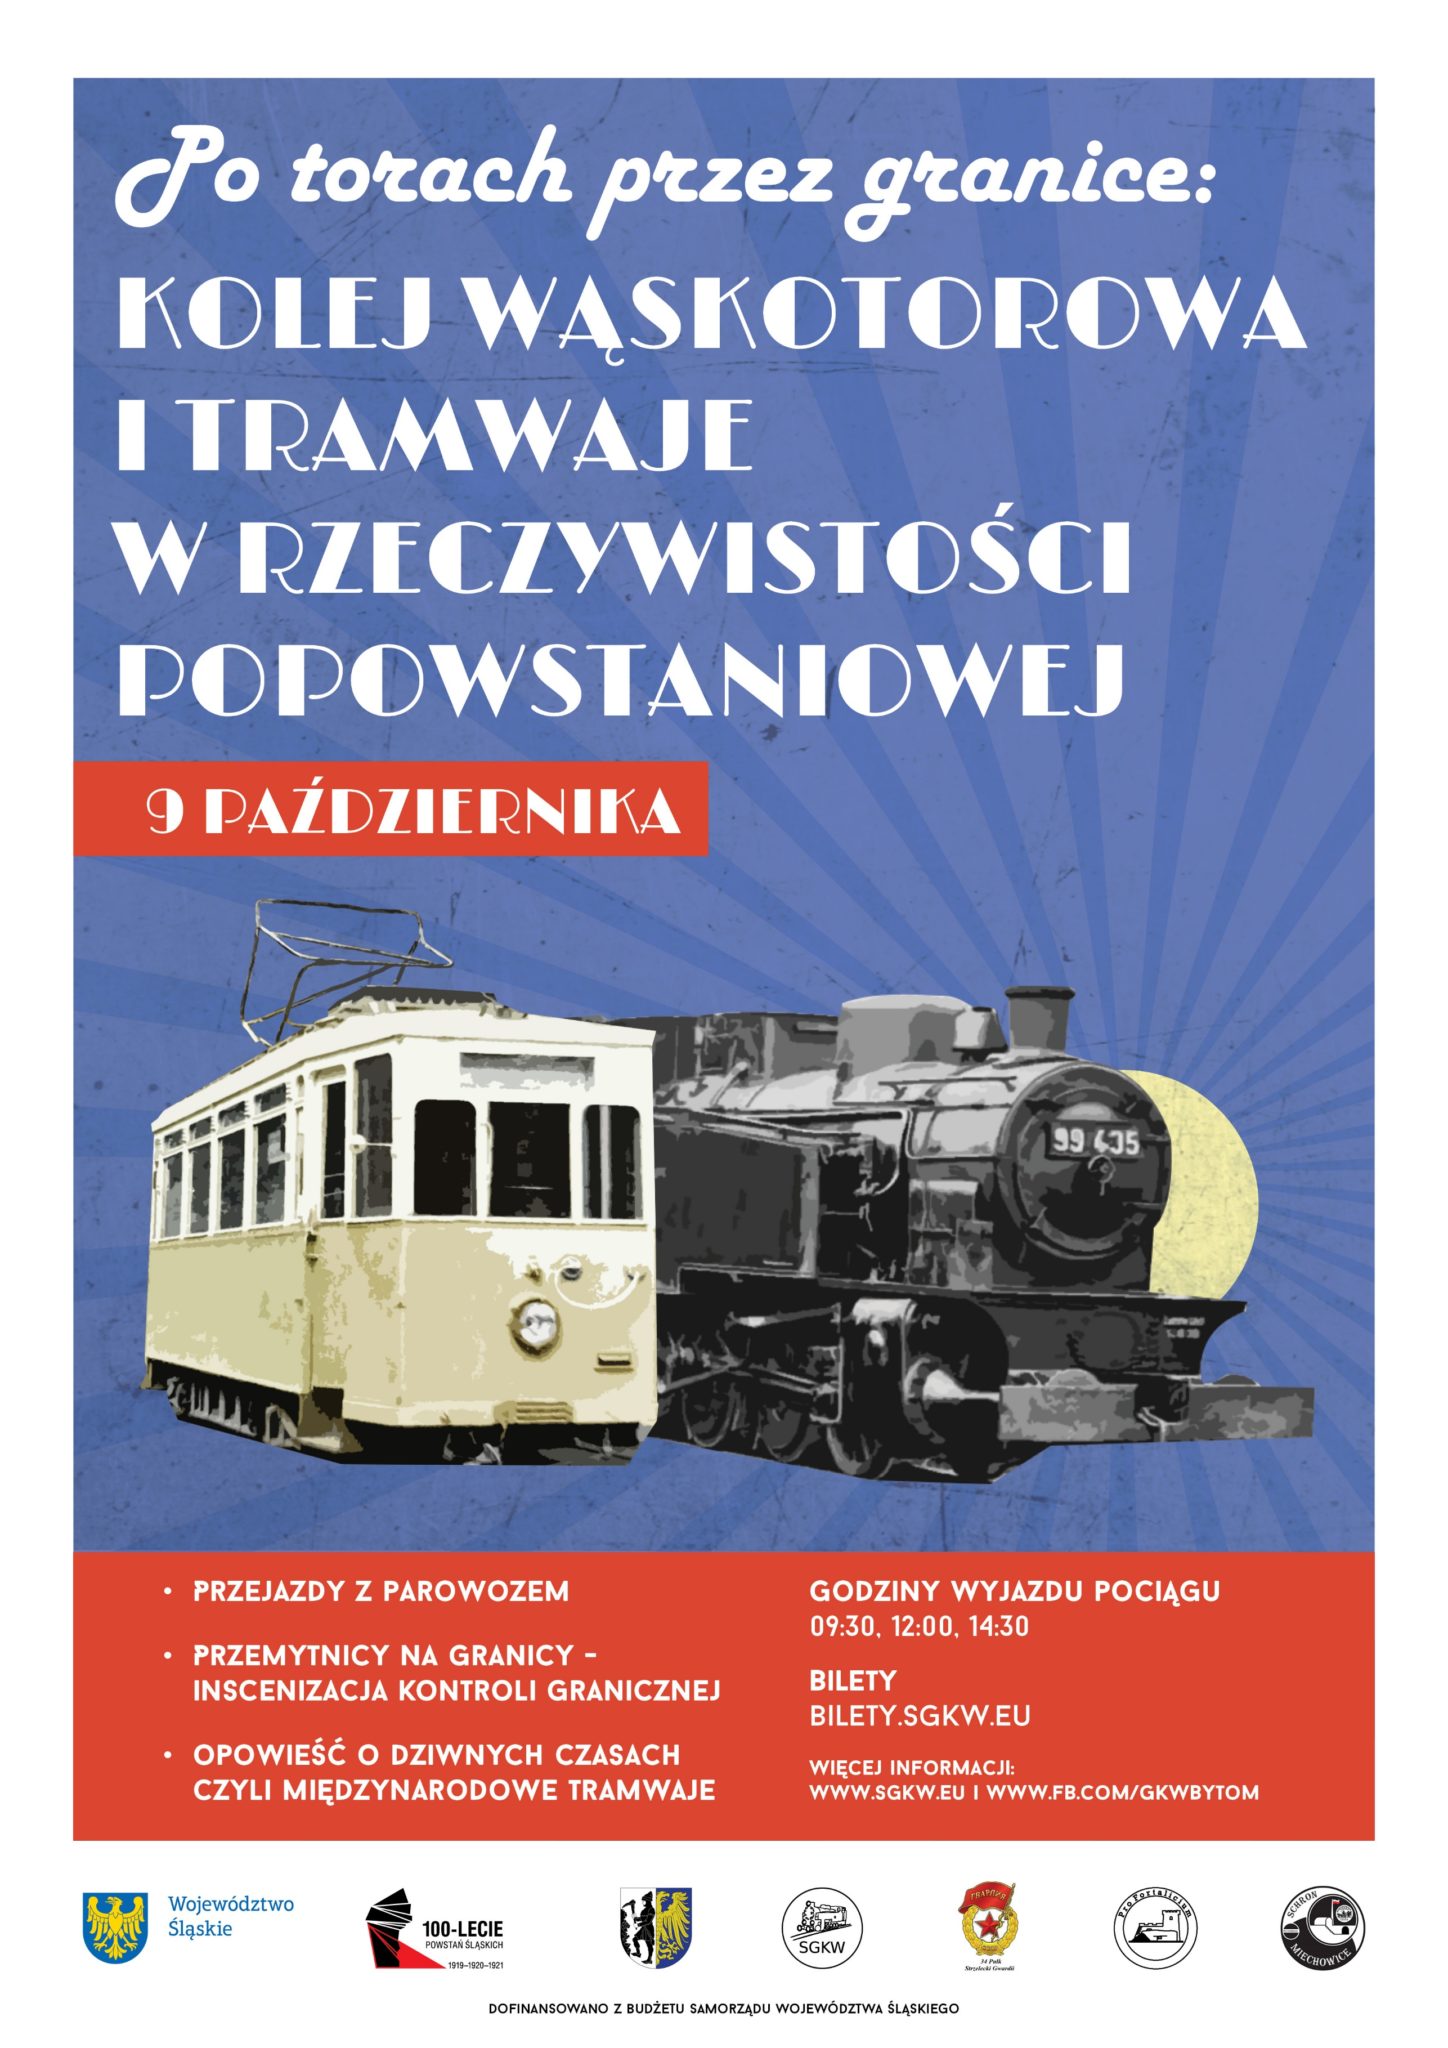 plakat z napisem kolej wąskotorowa i tramwaje w rzeczywistości popowstaniowej, poniżej napisu rysunek lokomotywy i tramwaju.